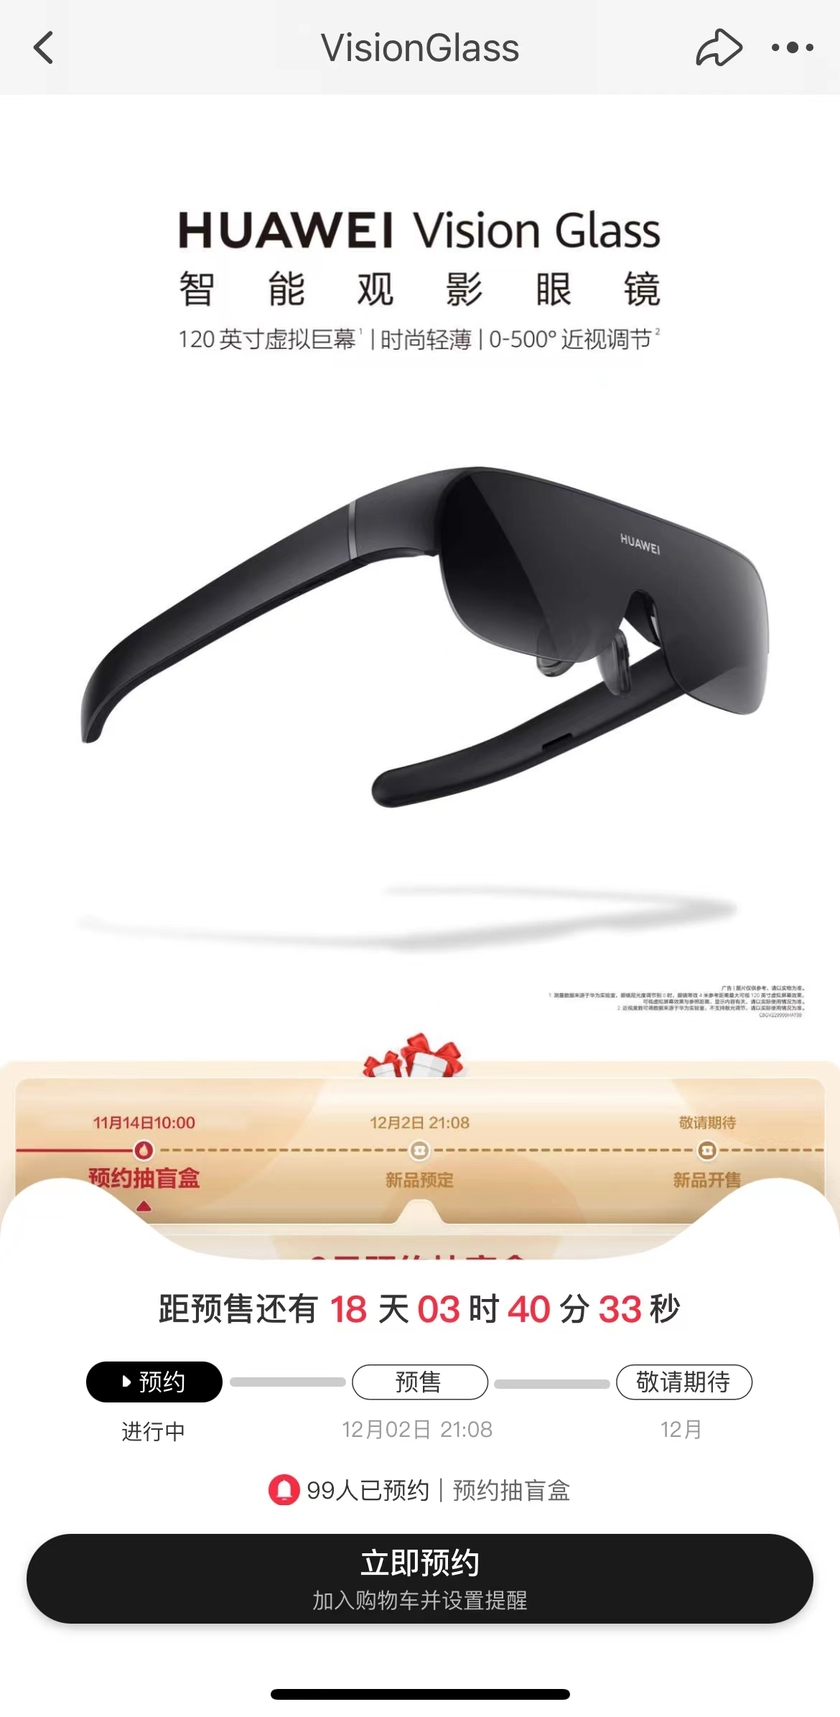 已开启预订 华为首款智能观影眼镜Vision Glass发布